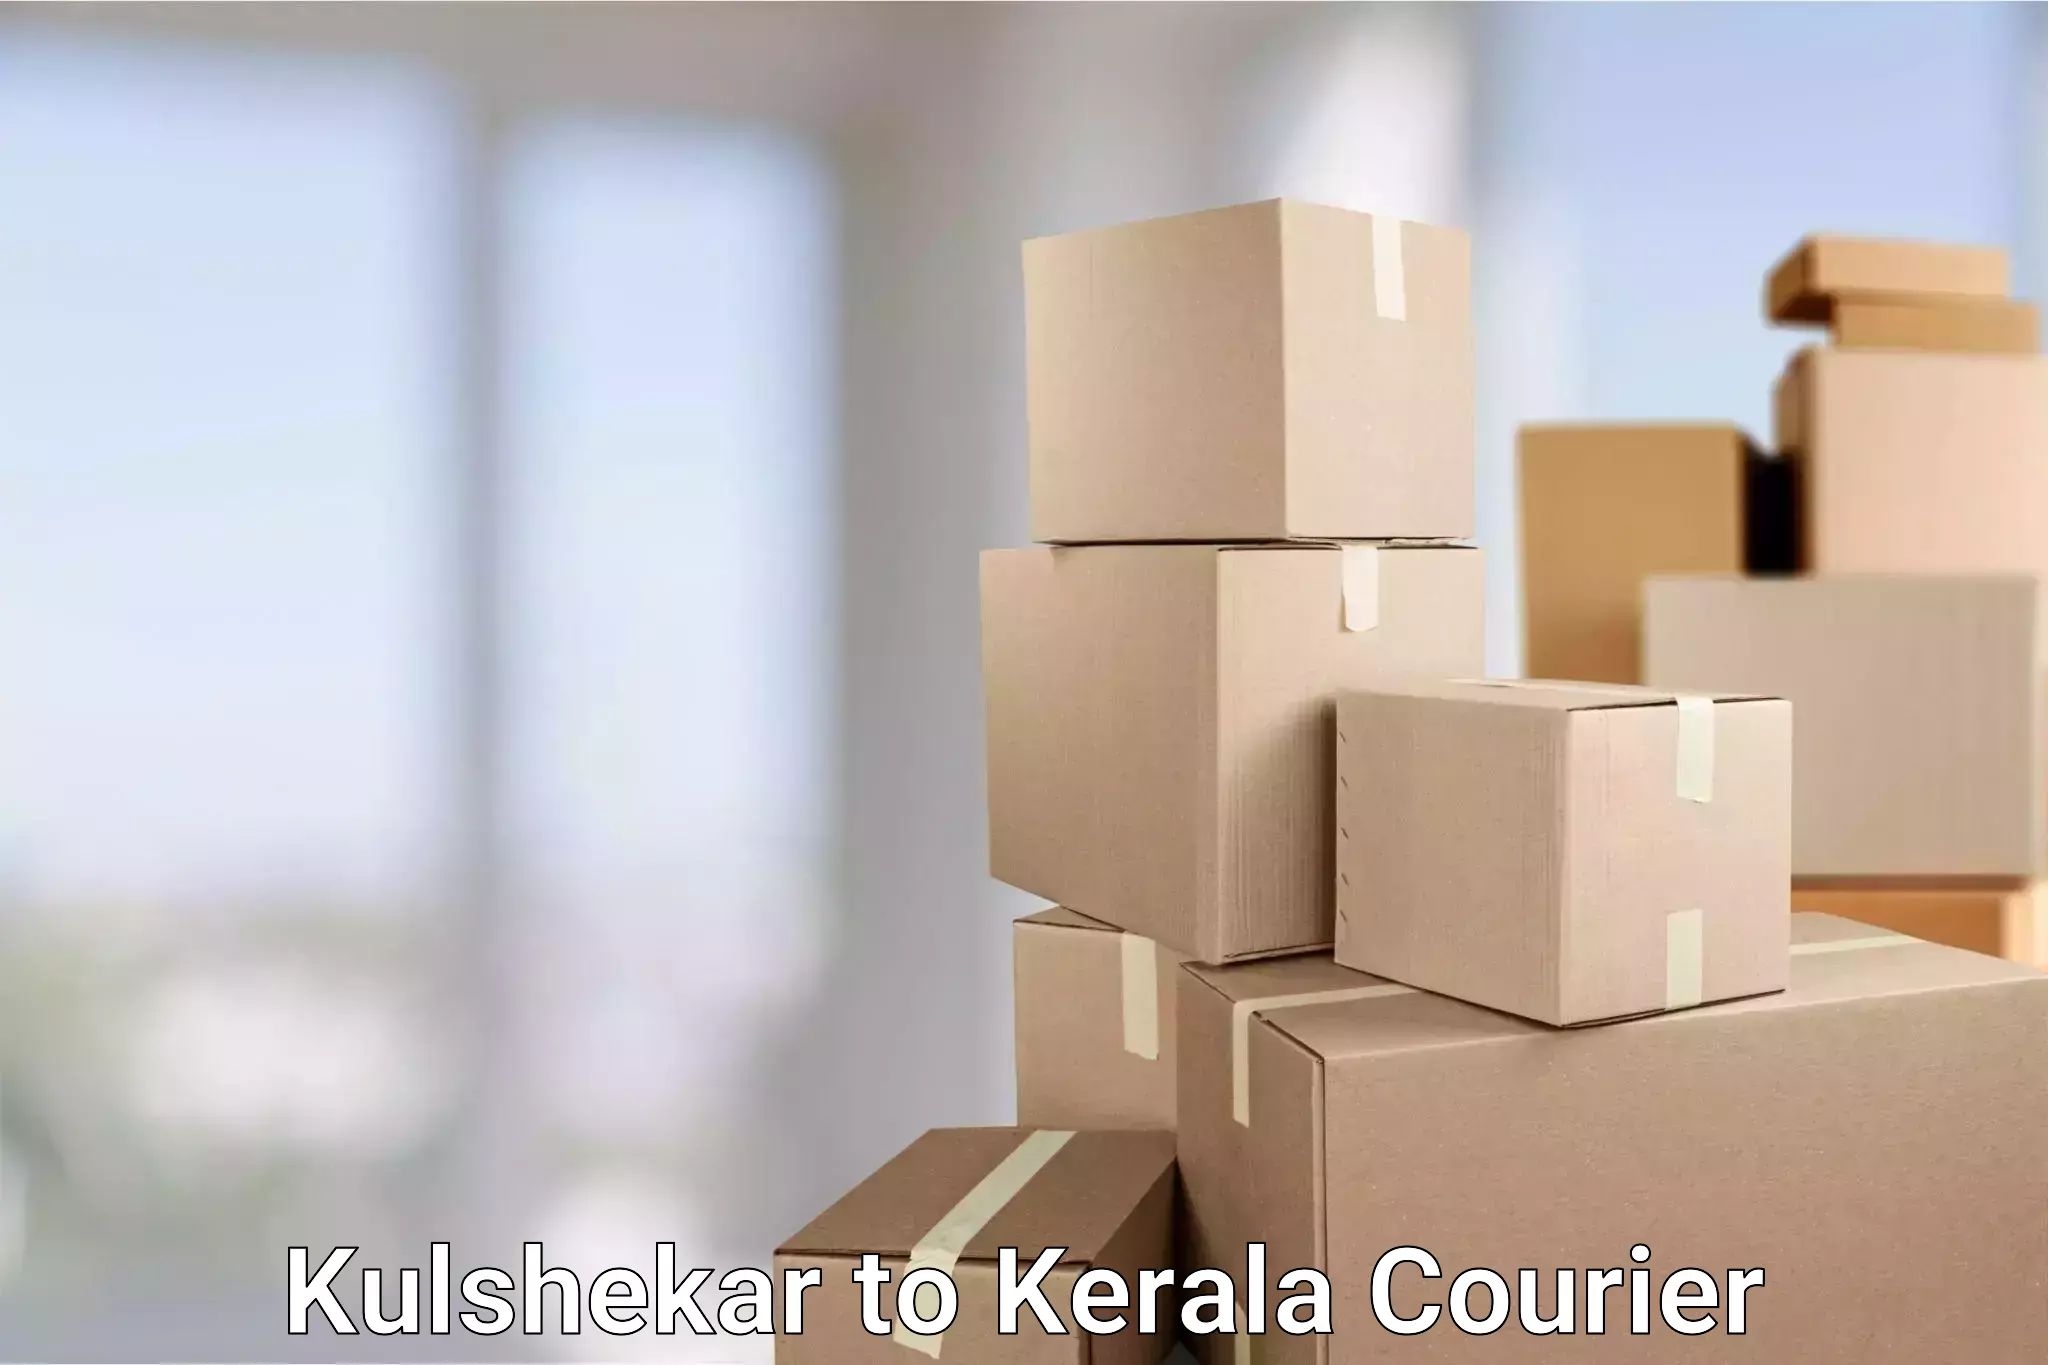 Secure packaging Kulshekar to Chungathara